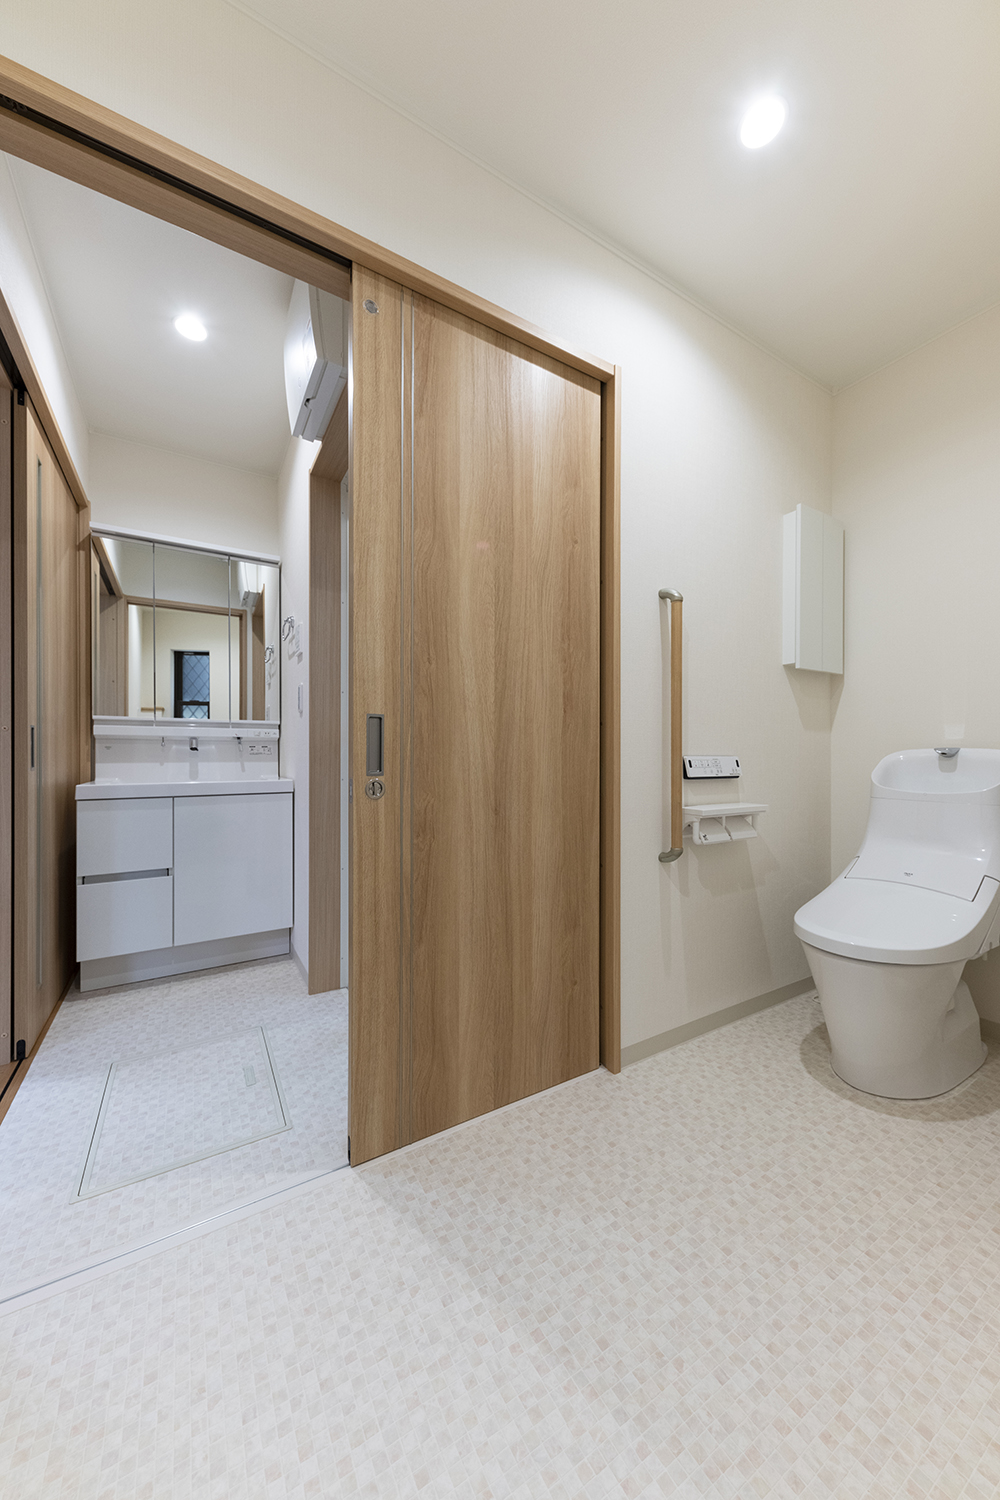 ゆとりのある1階トイレ。手すりを設置して安全で快適な暮らしをサポートします。